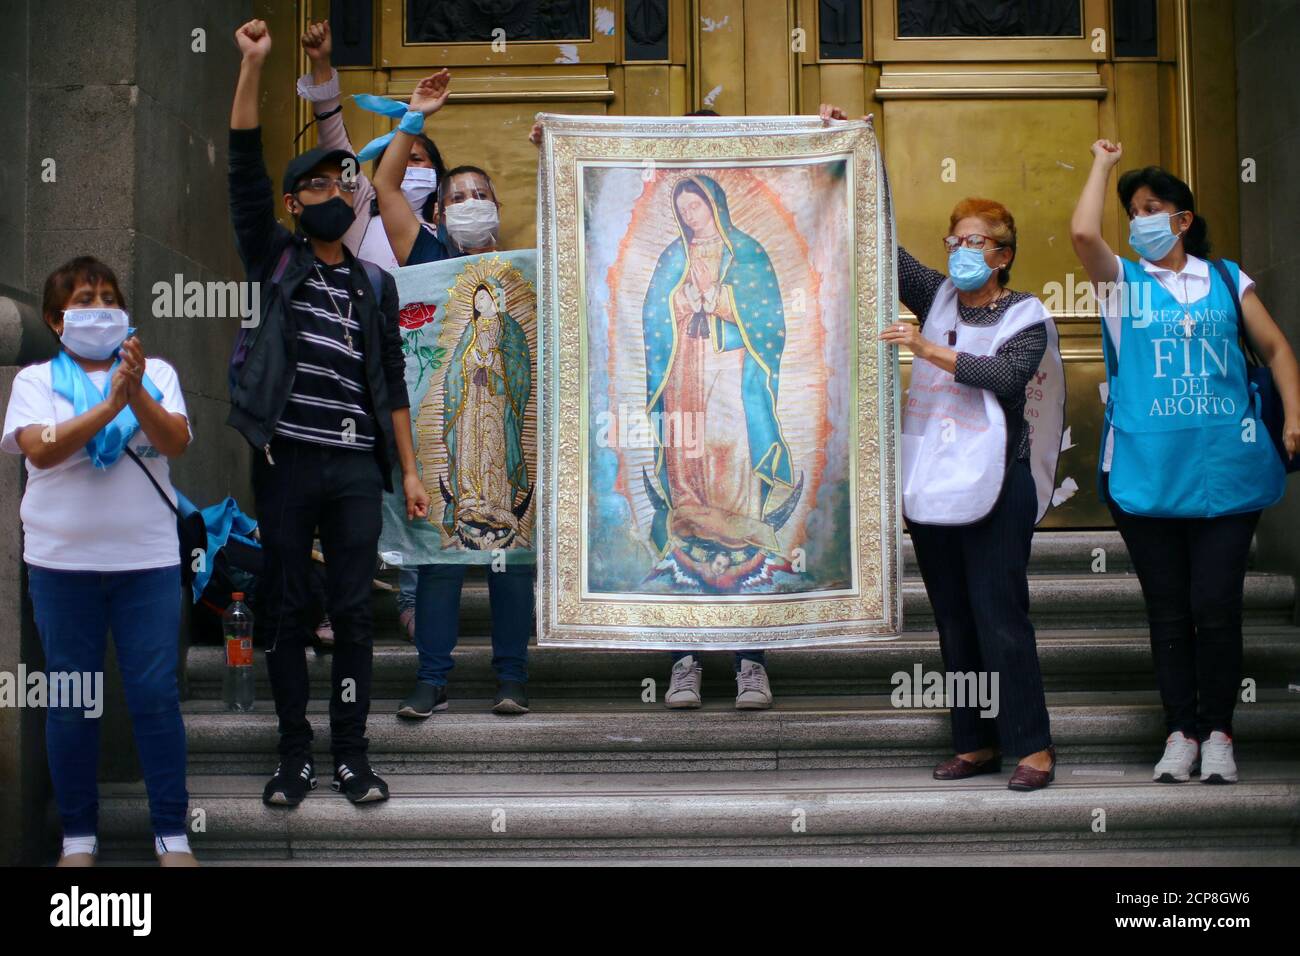 La gente tiene imágenes de la Virgen de Guadalupe mientras celebra después de la votación de los miembros de la Corte Suprema de México sobre la propuesta de despenalización del aborto, fuera del edificio de la Corte Suprema de México, en la Ciudad de México, México, 29 de julio de 2020. REUTERS/Edgard Garrido Foto de stock